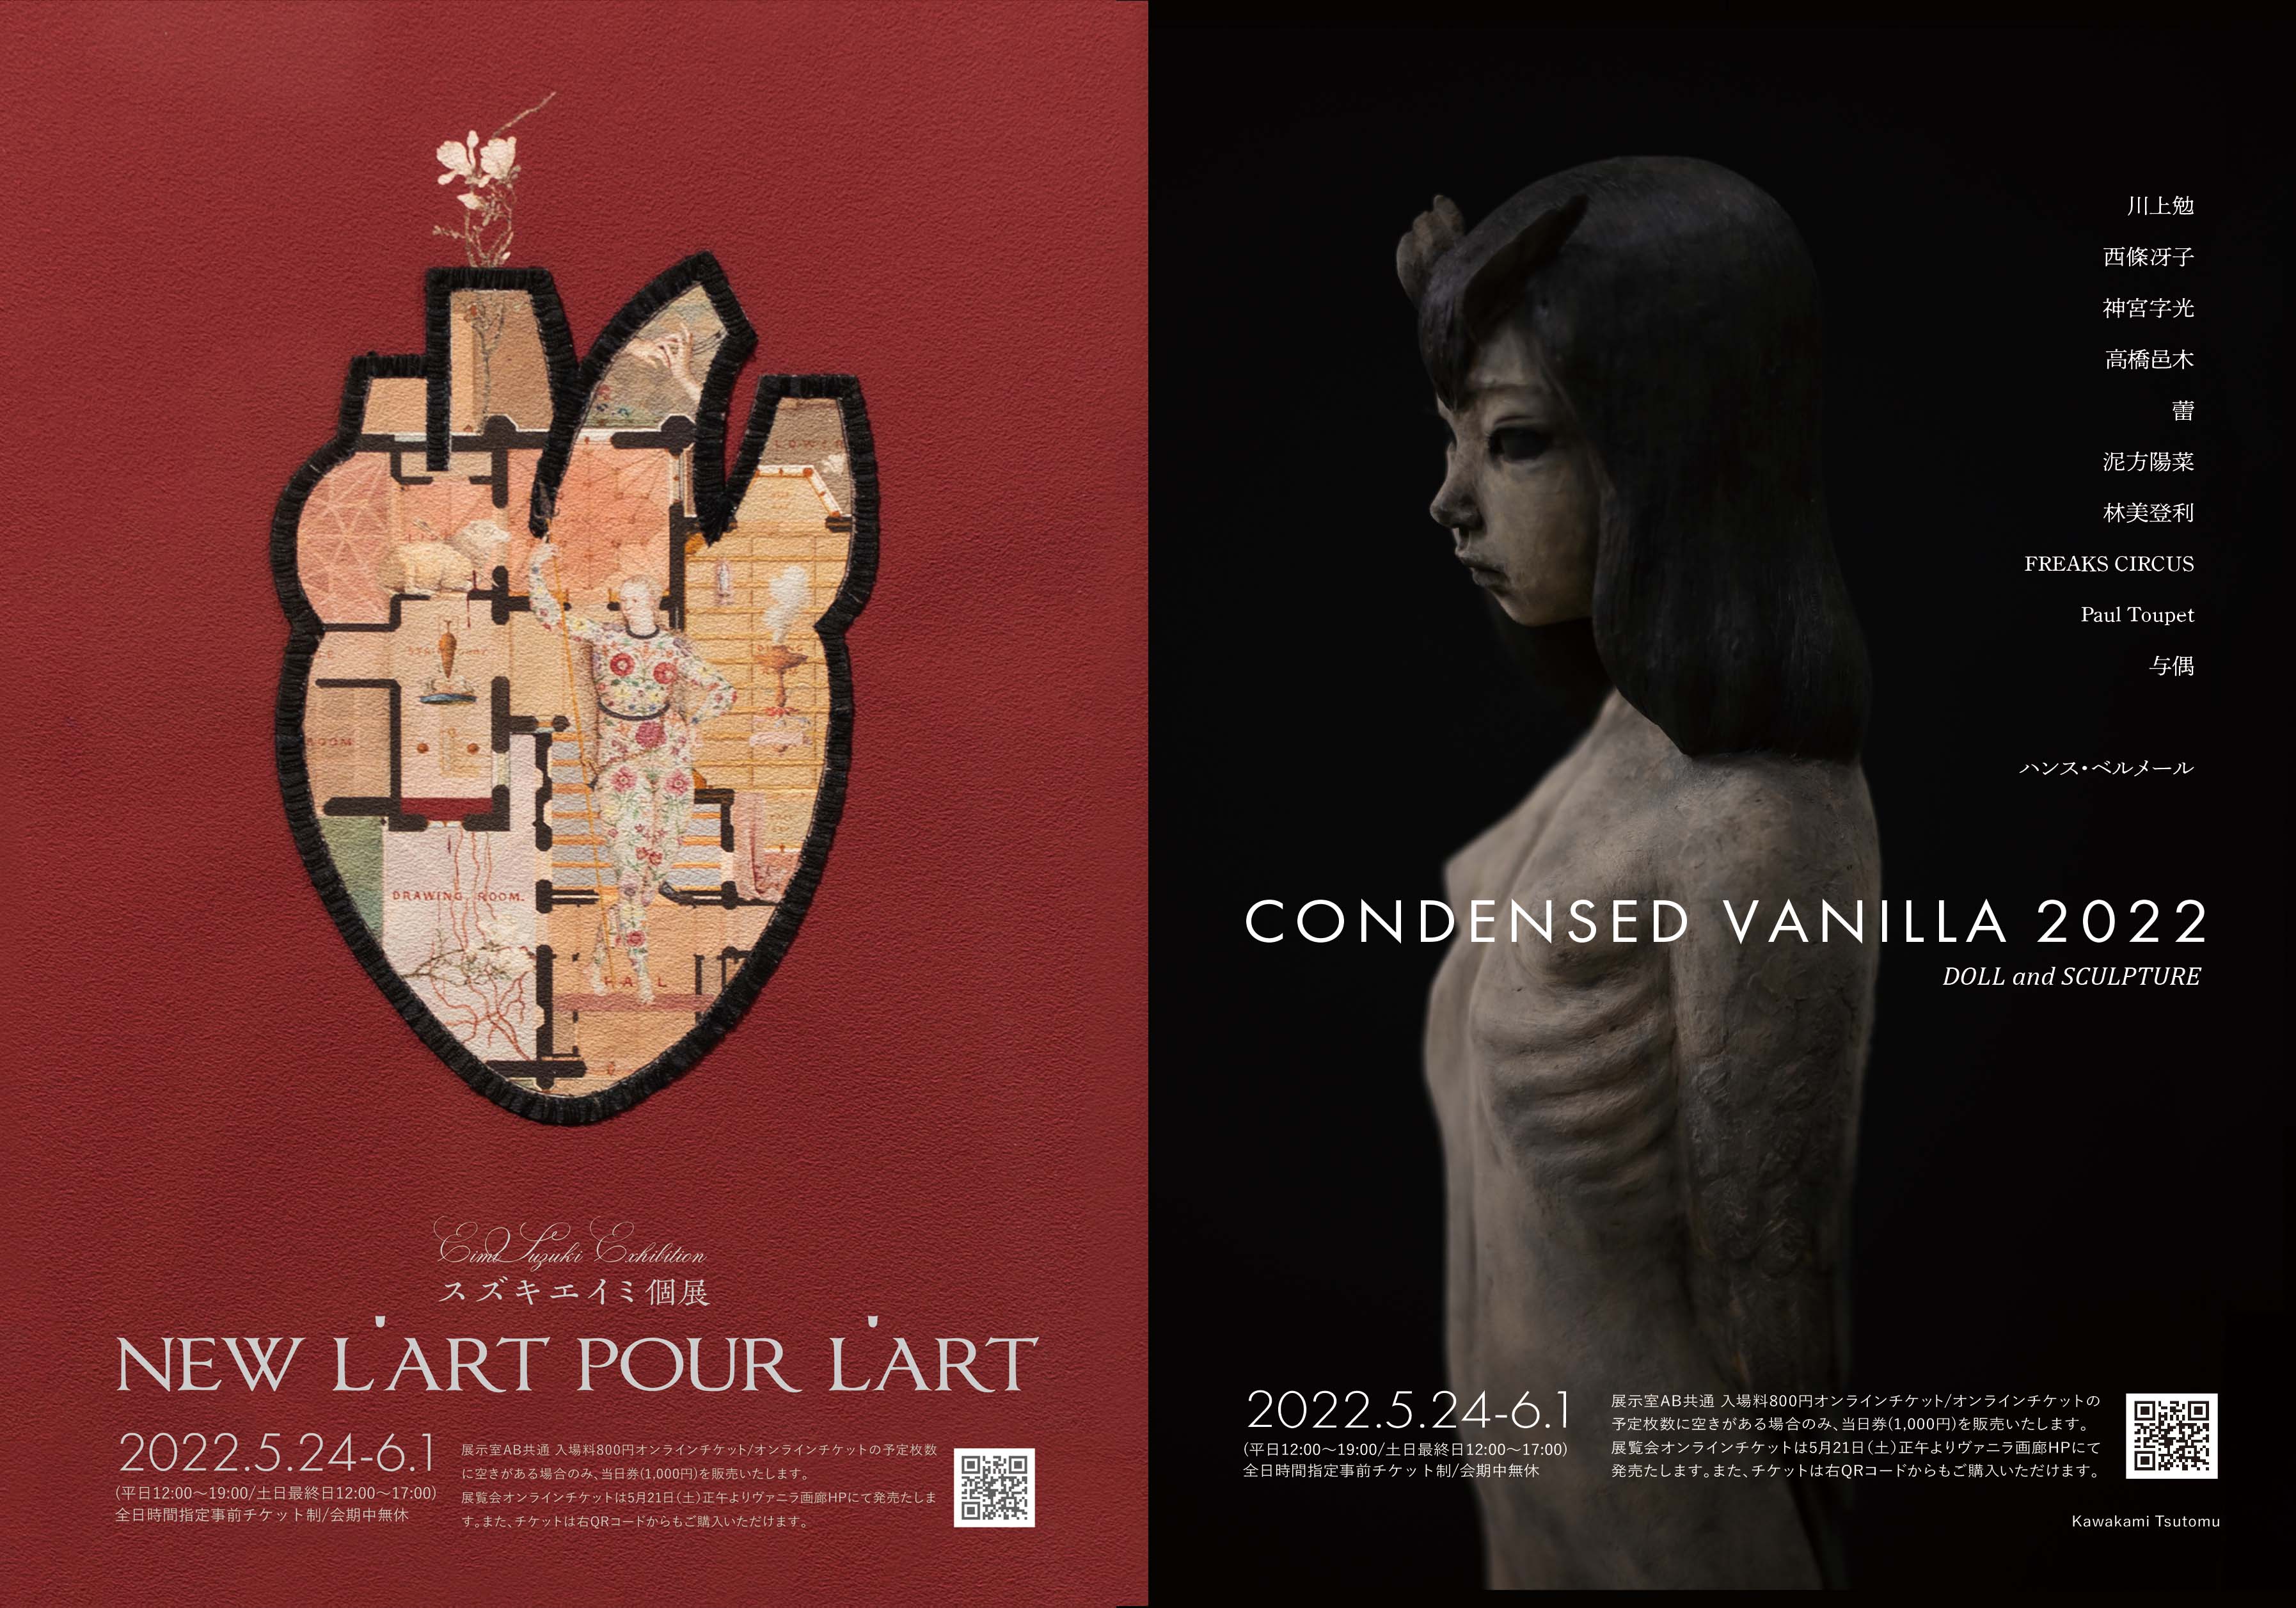 スズキエイミ個展「New L'art pour l'art」/ CONDENSED VANILLA 2022 DOLL＆SCULPTURE 5月30日(月)